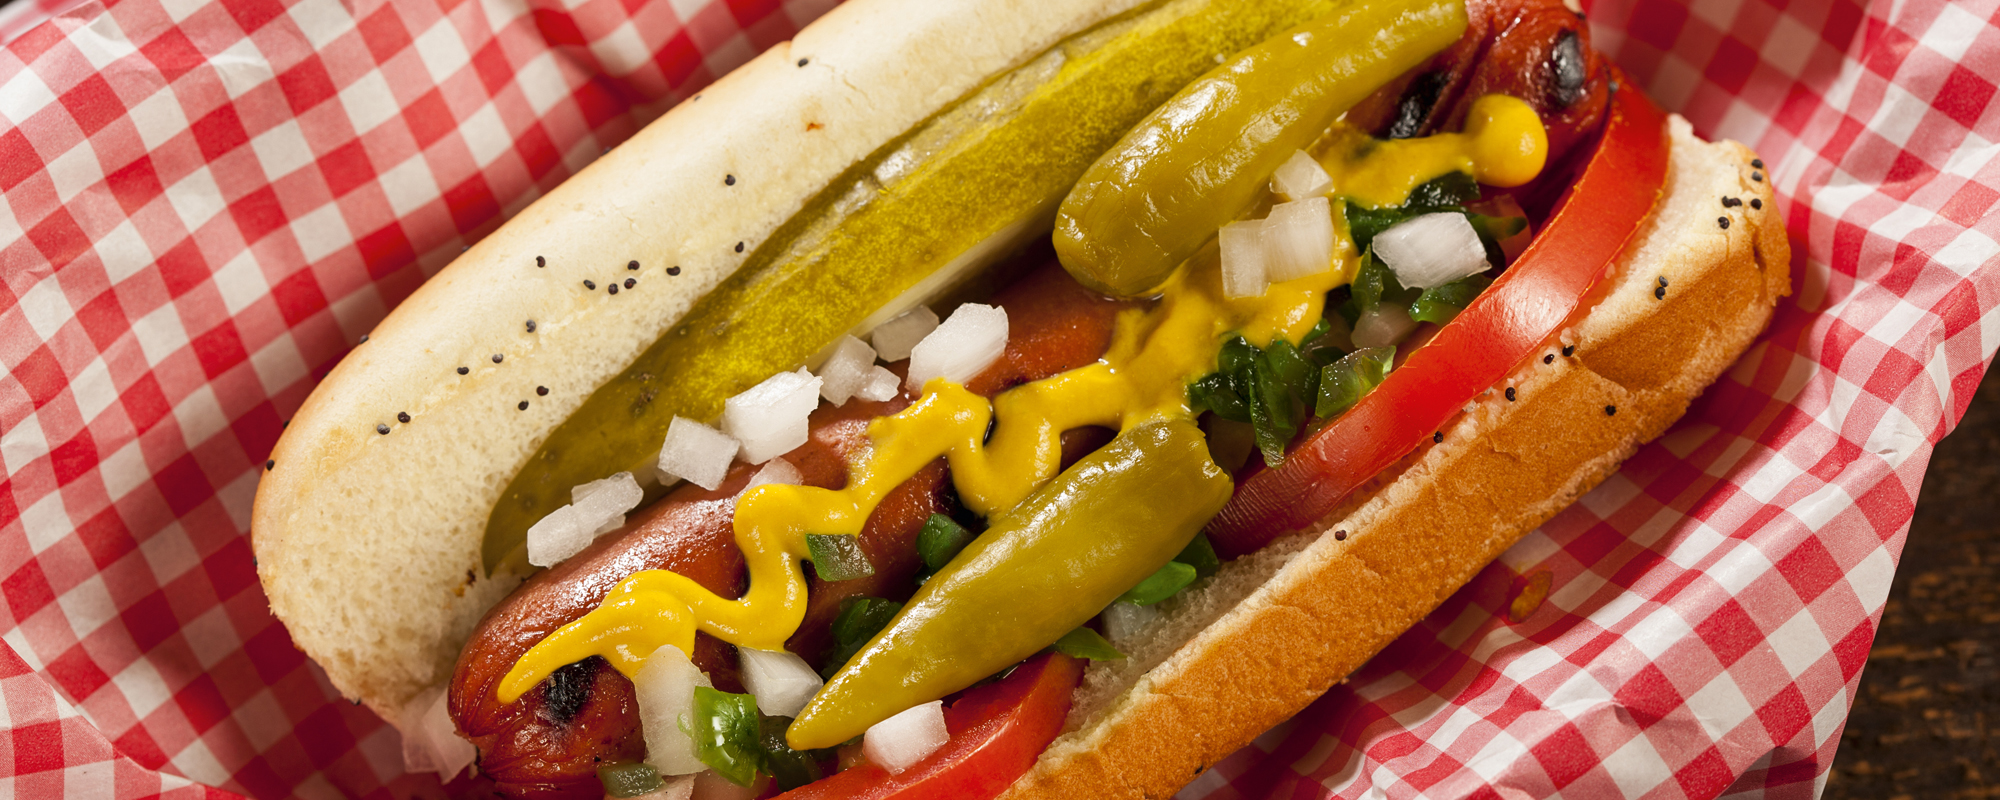 Chicago-style hot dog